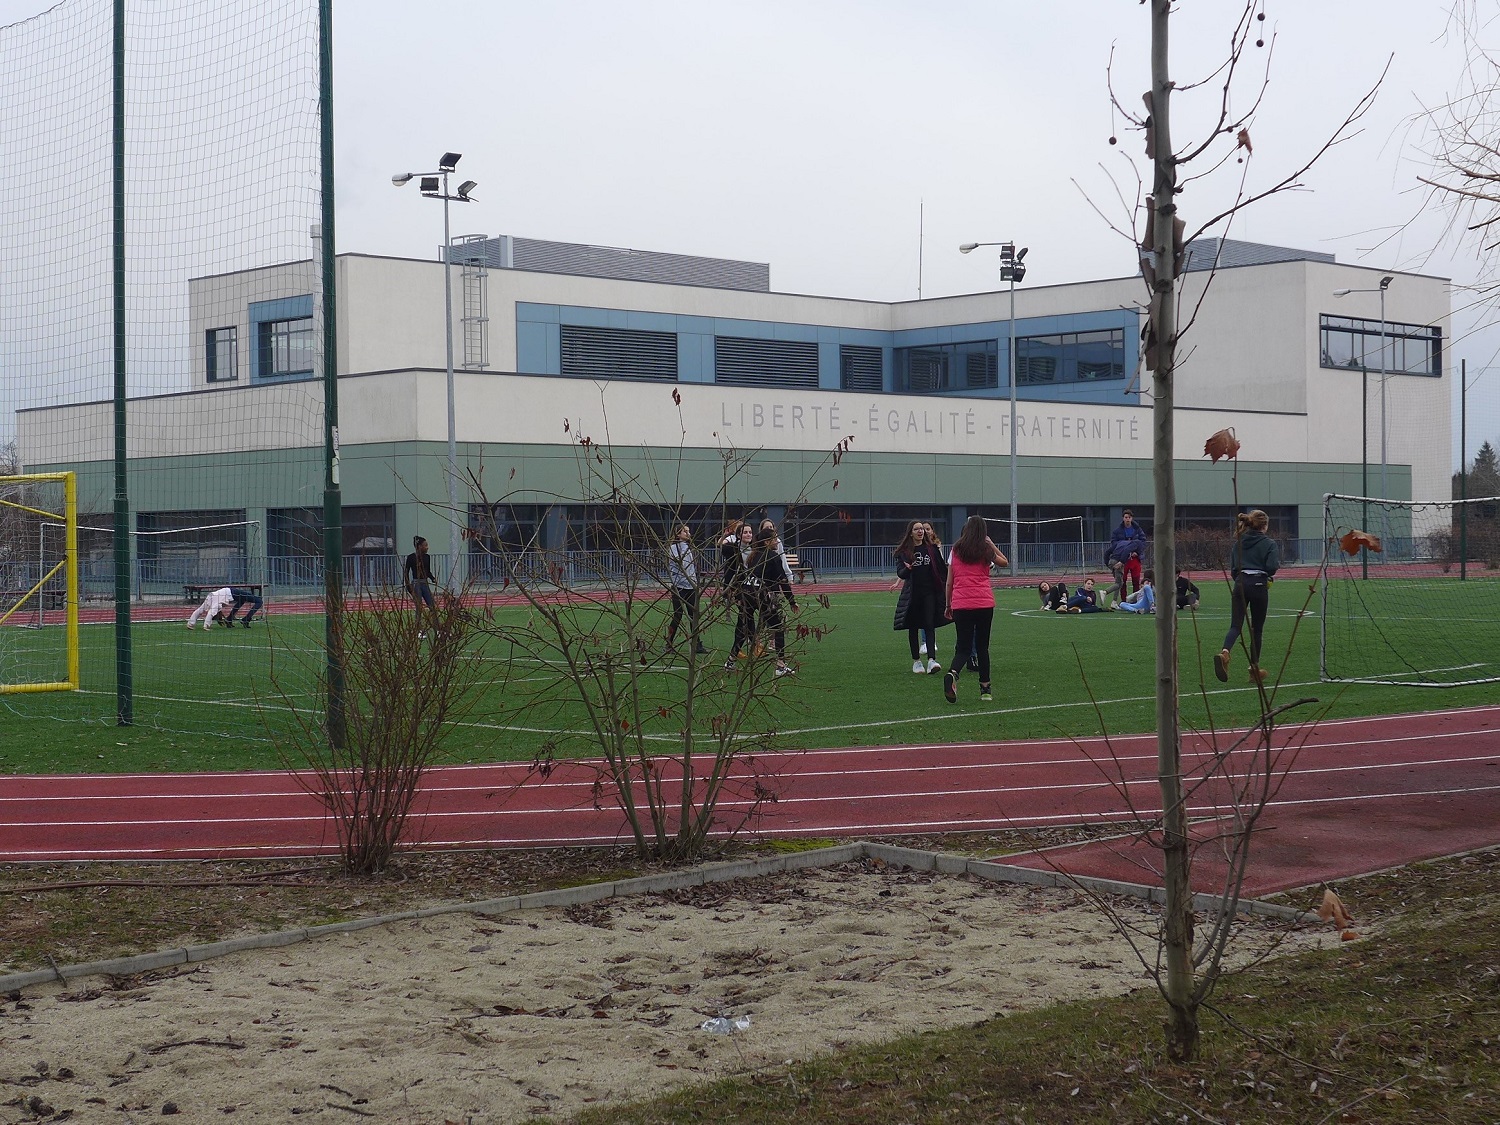 Le lycée dispoe d’un terrain synthétique et d’une piste d’athlétisme.